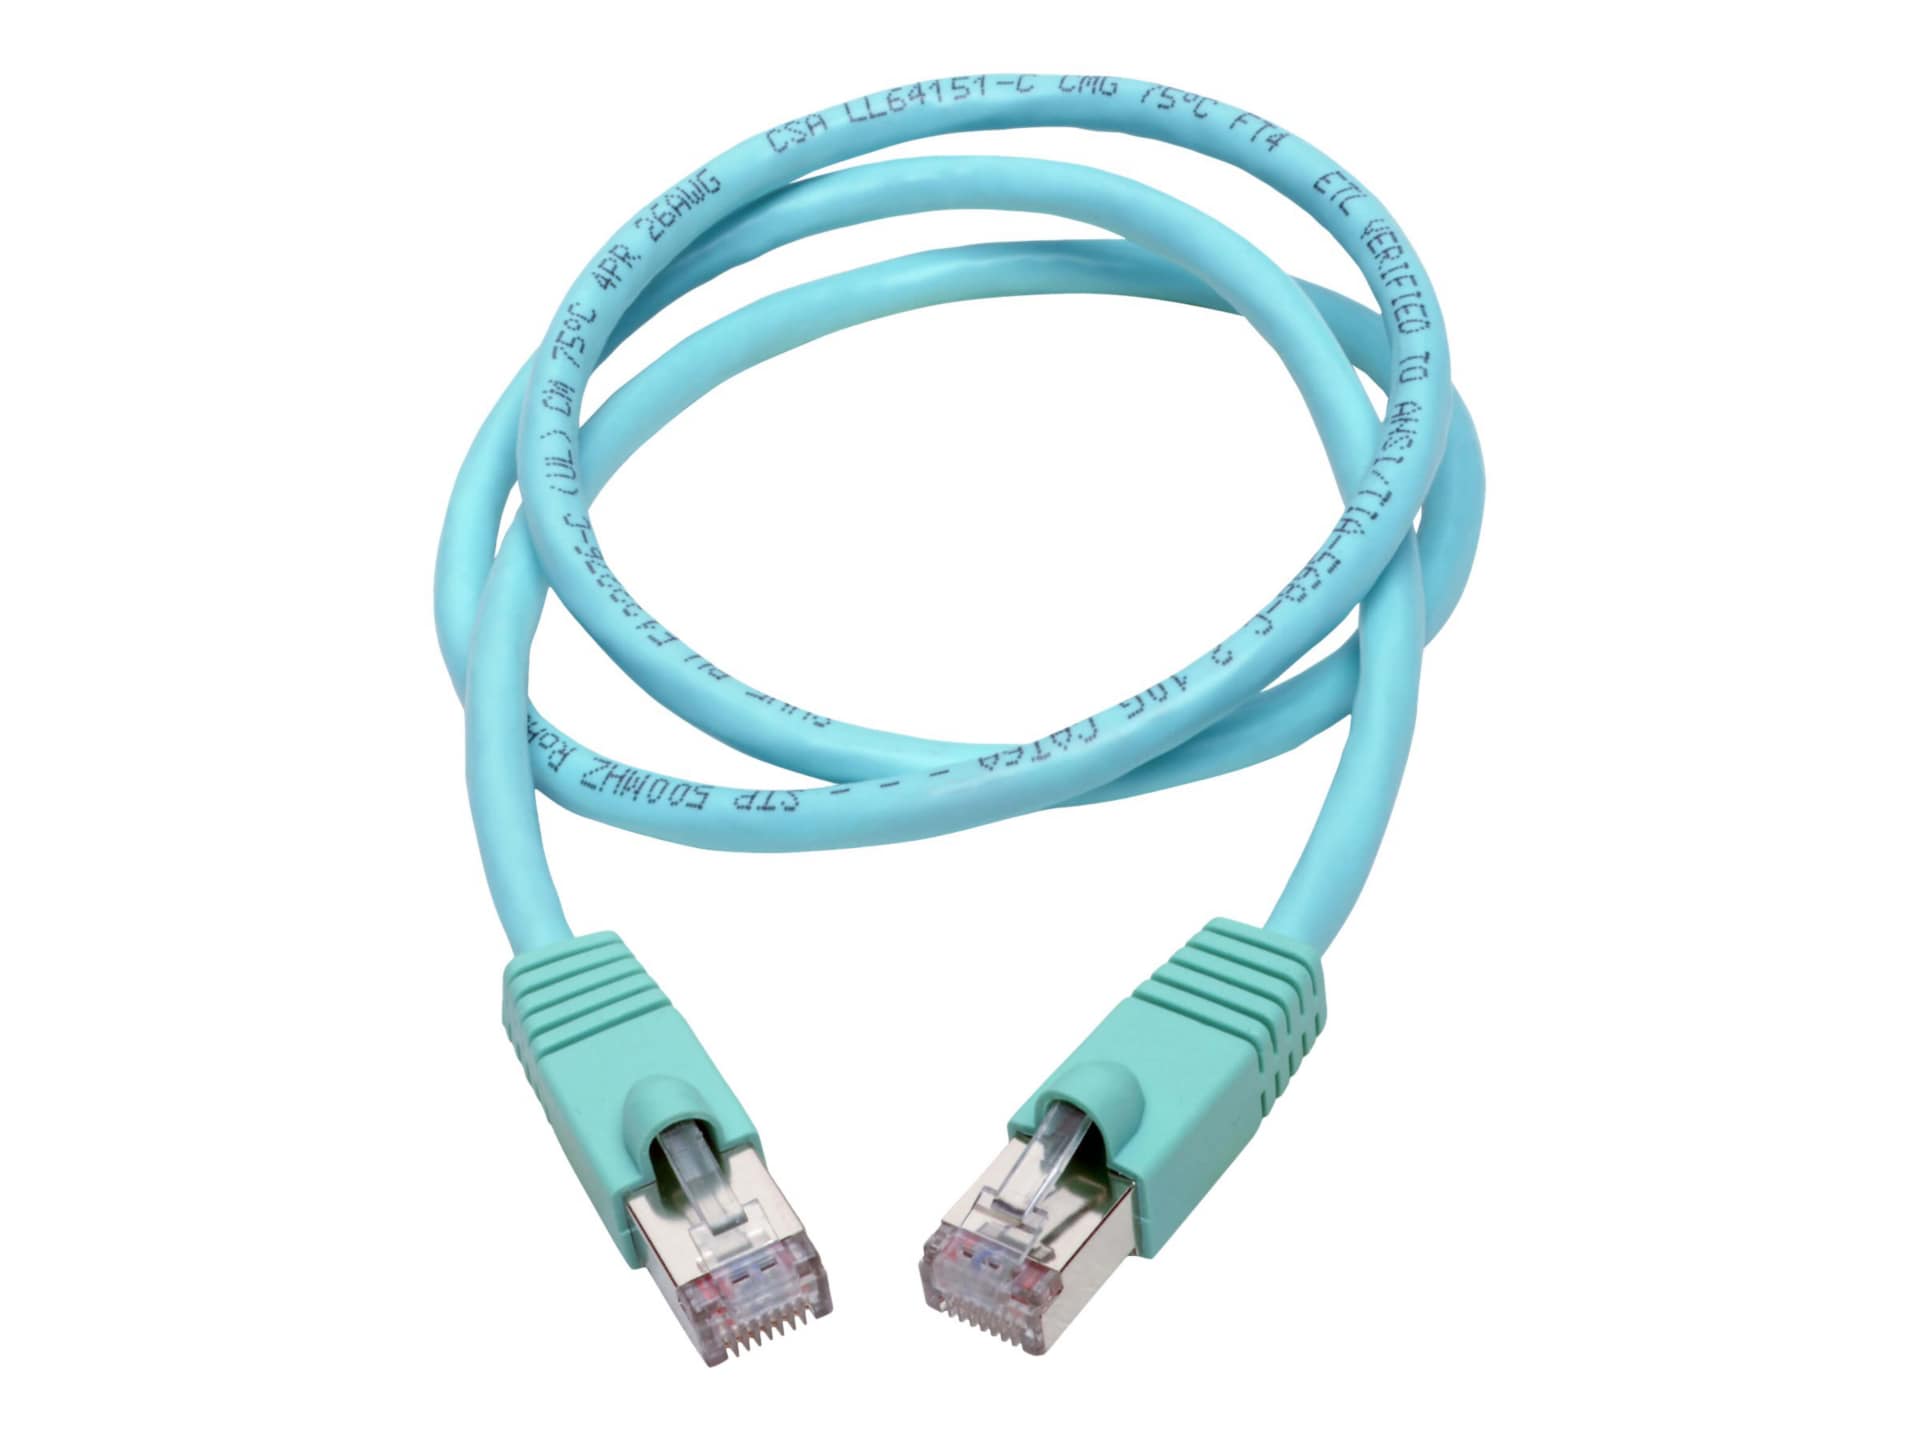 Eaton Tripp Lite Series Cat6a 10G Snagless Shielded STP Ethernet Cable (RJ45 M/M), PoE, Aqua, 3 ft. (0.91 m) - patch